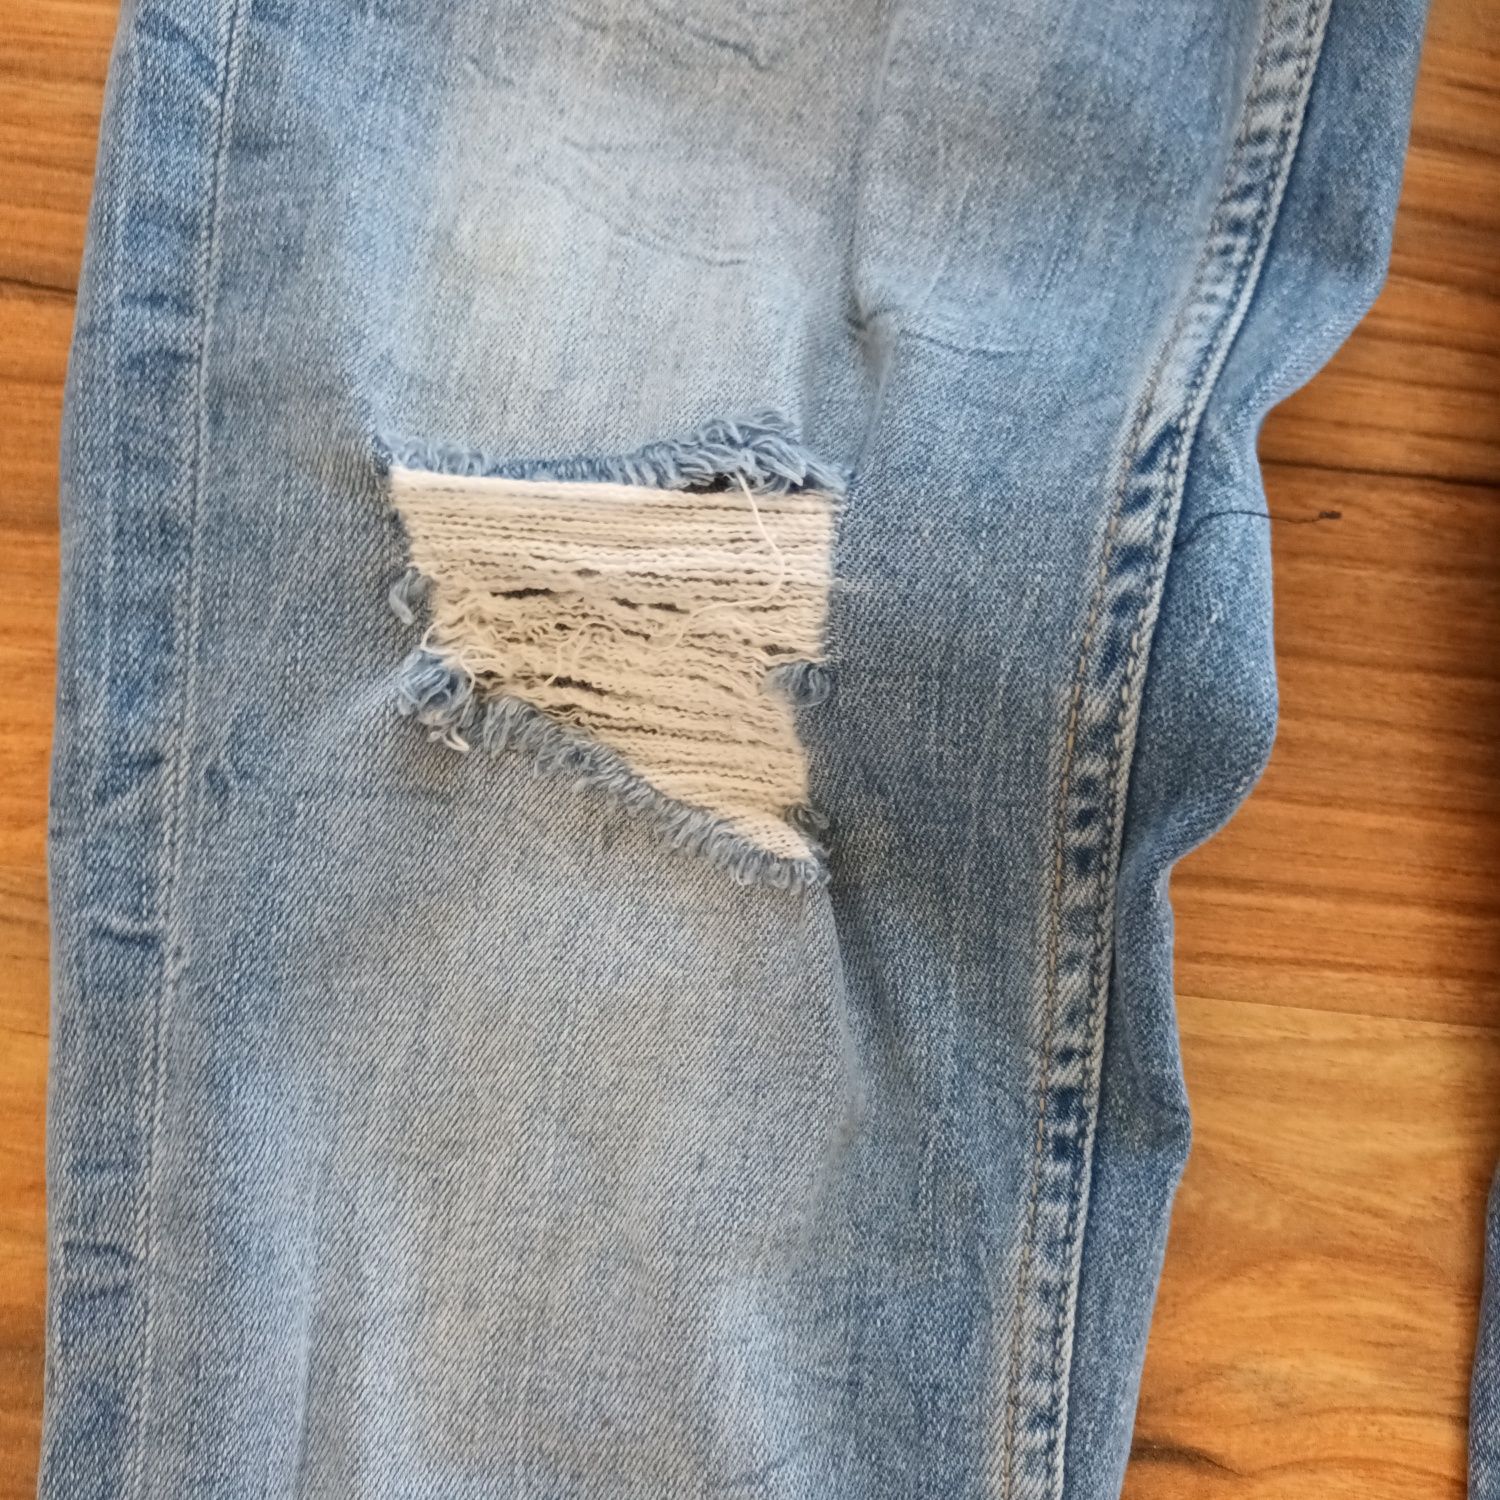 Rurki 36 S ZARA spodnie z dziurami jeansowe jeansy elastyczne